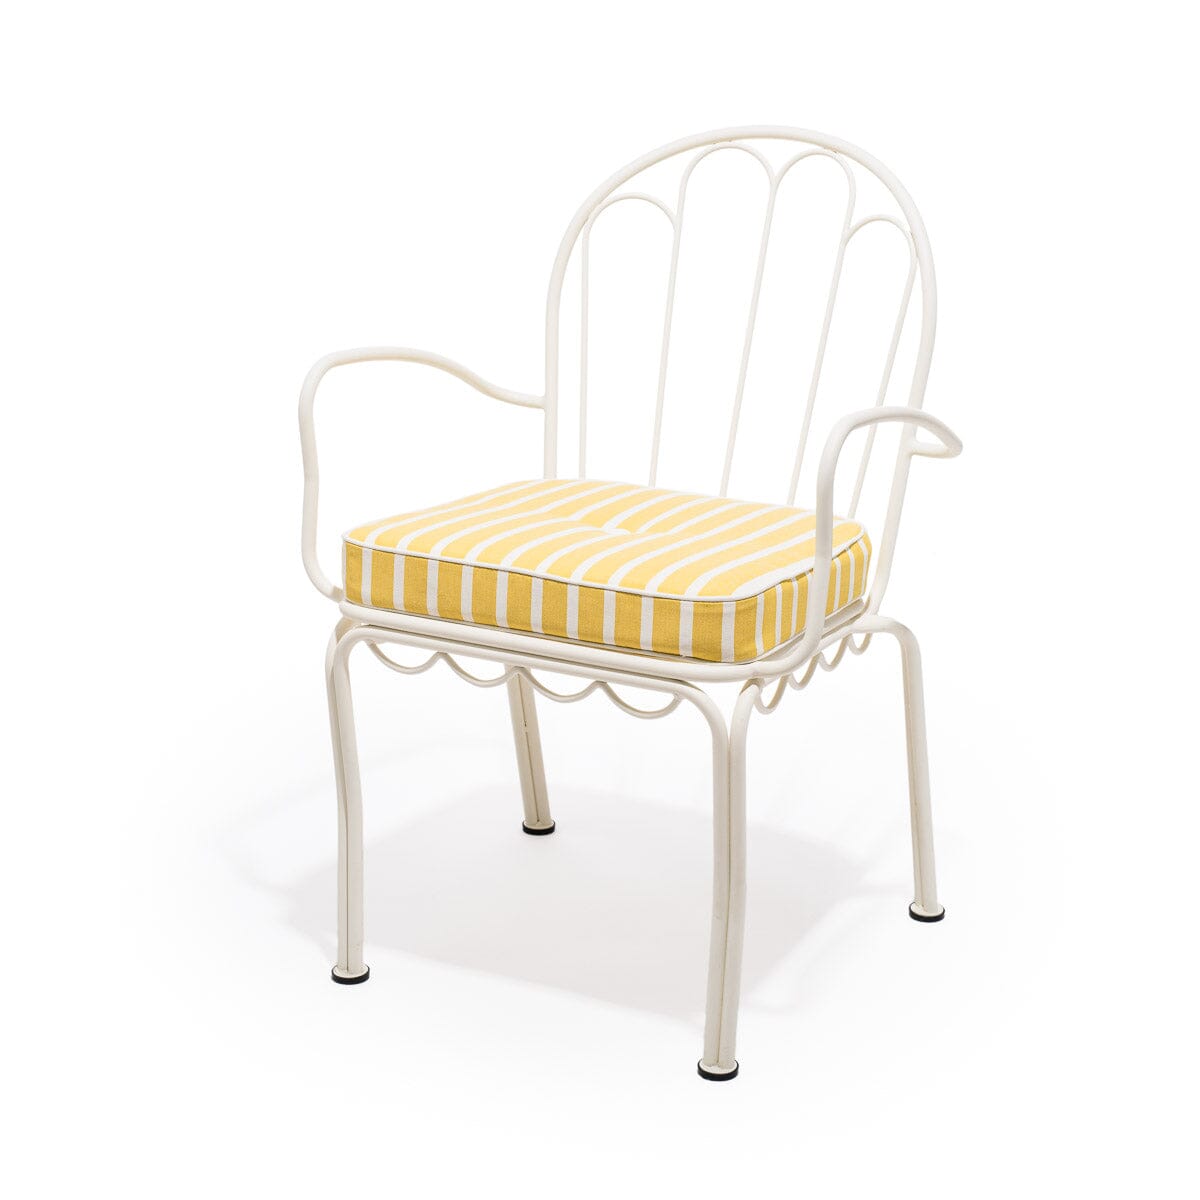 The Al Fresco Chair Cushion - Monaco Mimosa Stripe Al Fresco Chair Cushion Business & Pleasure Co 